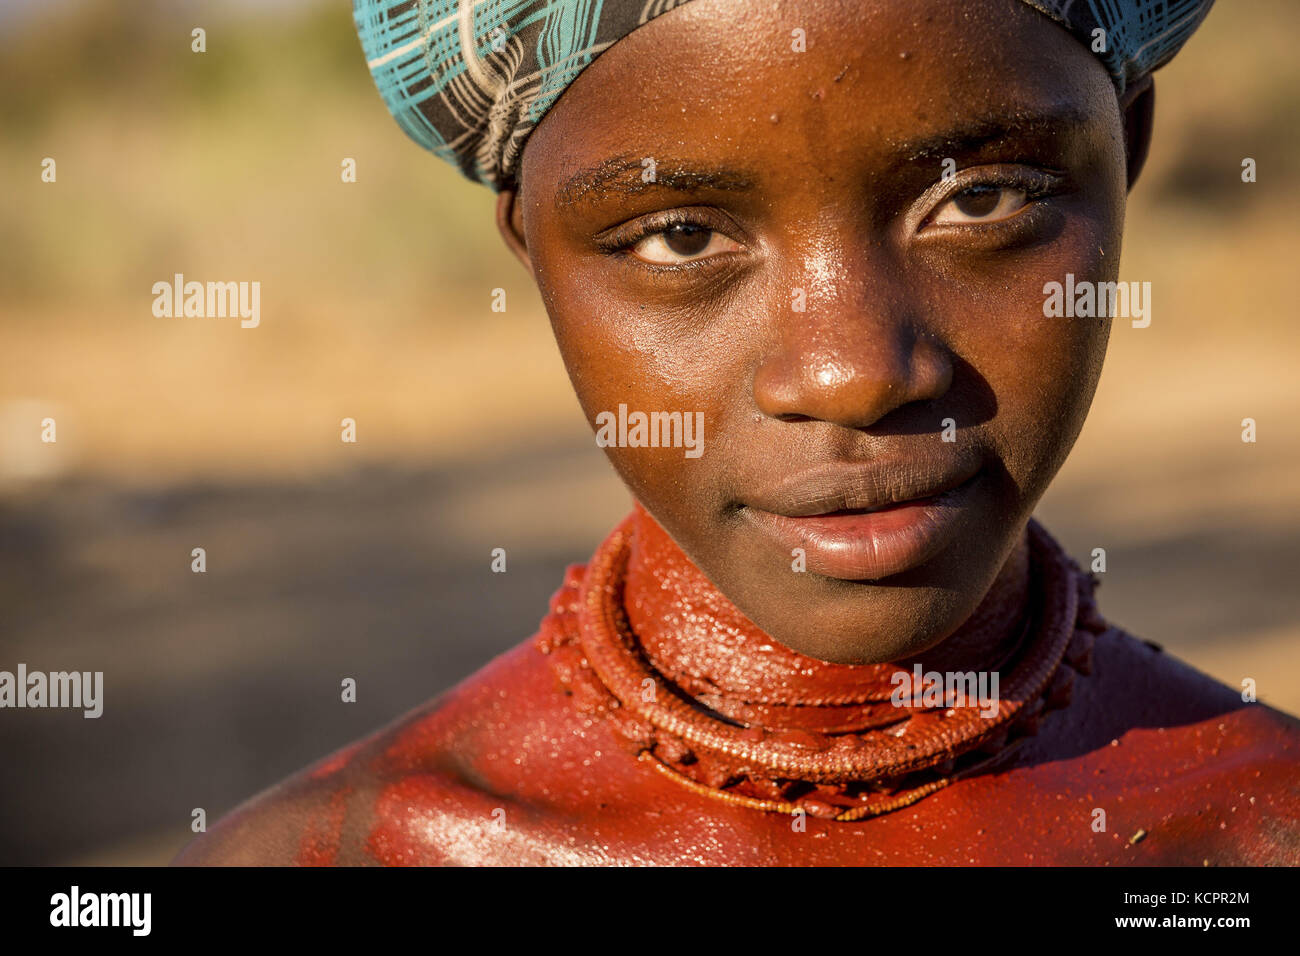 Angola. Juli 2016. Ein traditionelles Nguendelengo (auch als Nguendelengo geschrieben) Mädchen, das fast ausgestorben ist (eine Mischung aus Khoisan und Bantu). Sie sprechen einen seltenen Dialekt ''" Nyaneka - ähnlich wie Mumuila. Sie leben von der Jagd, dem Sammeln und der Aufzucht von Ziegen und sind dem Hauptstamm der Mukubal untergeordnet. Kredit: Tariq Zaidi/ZUMA Wire/Alamy Live News Stockfoto